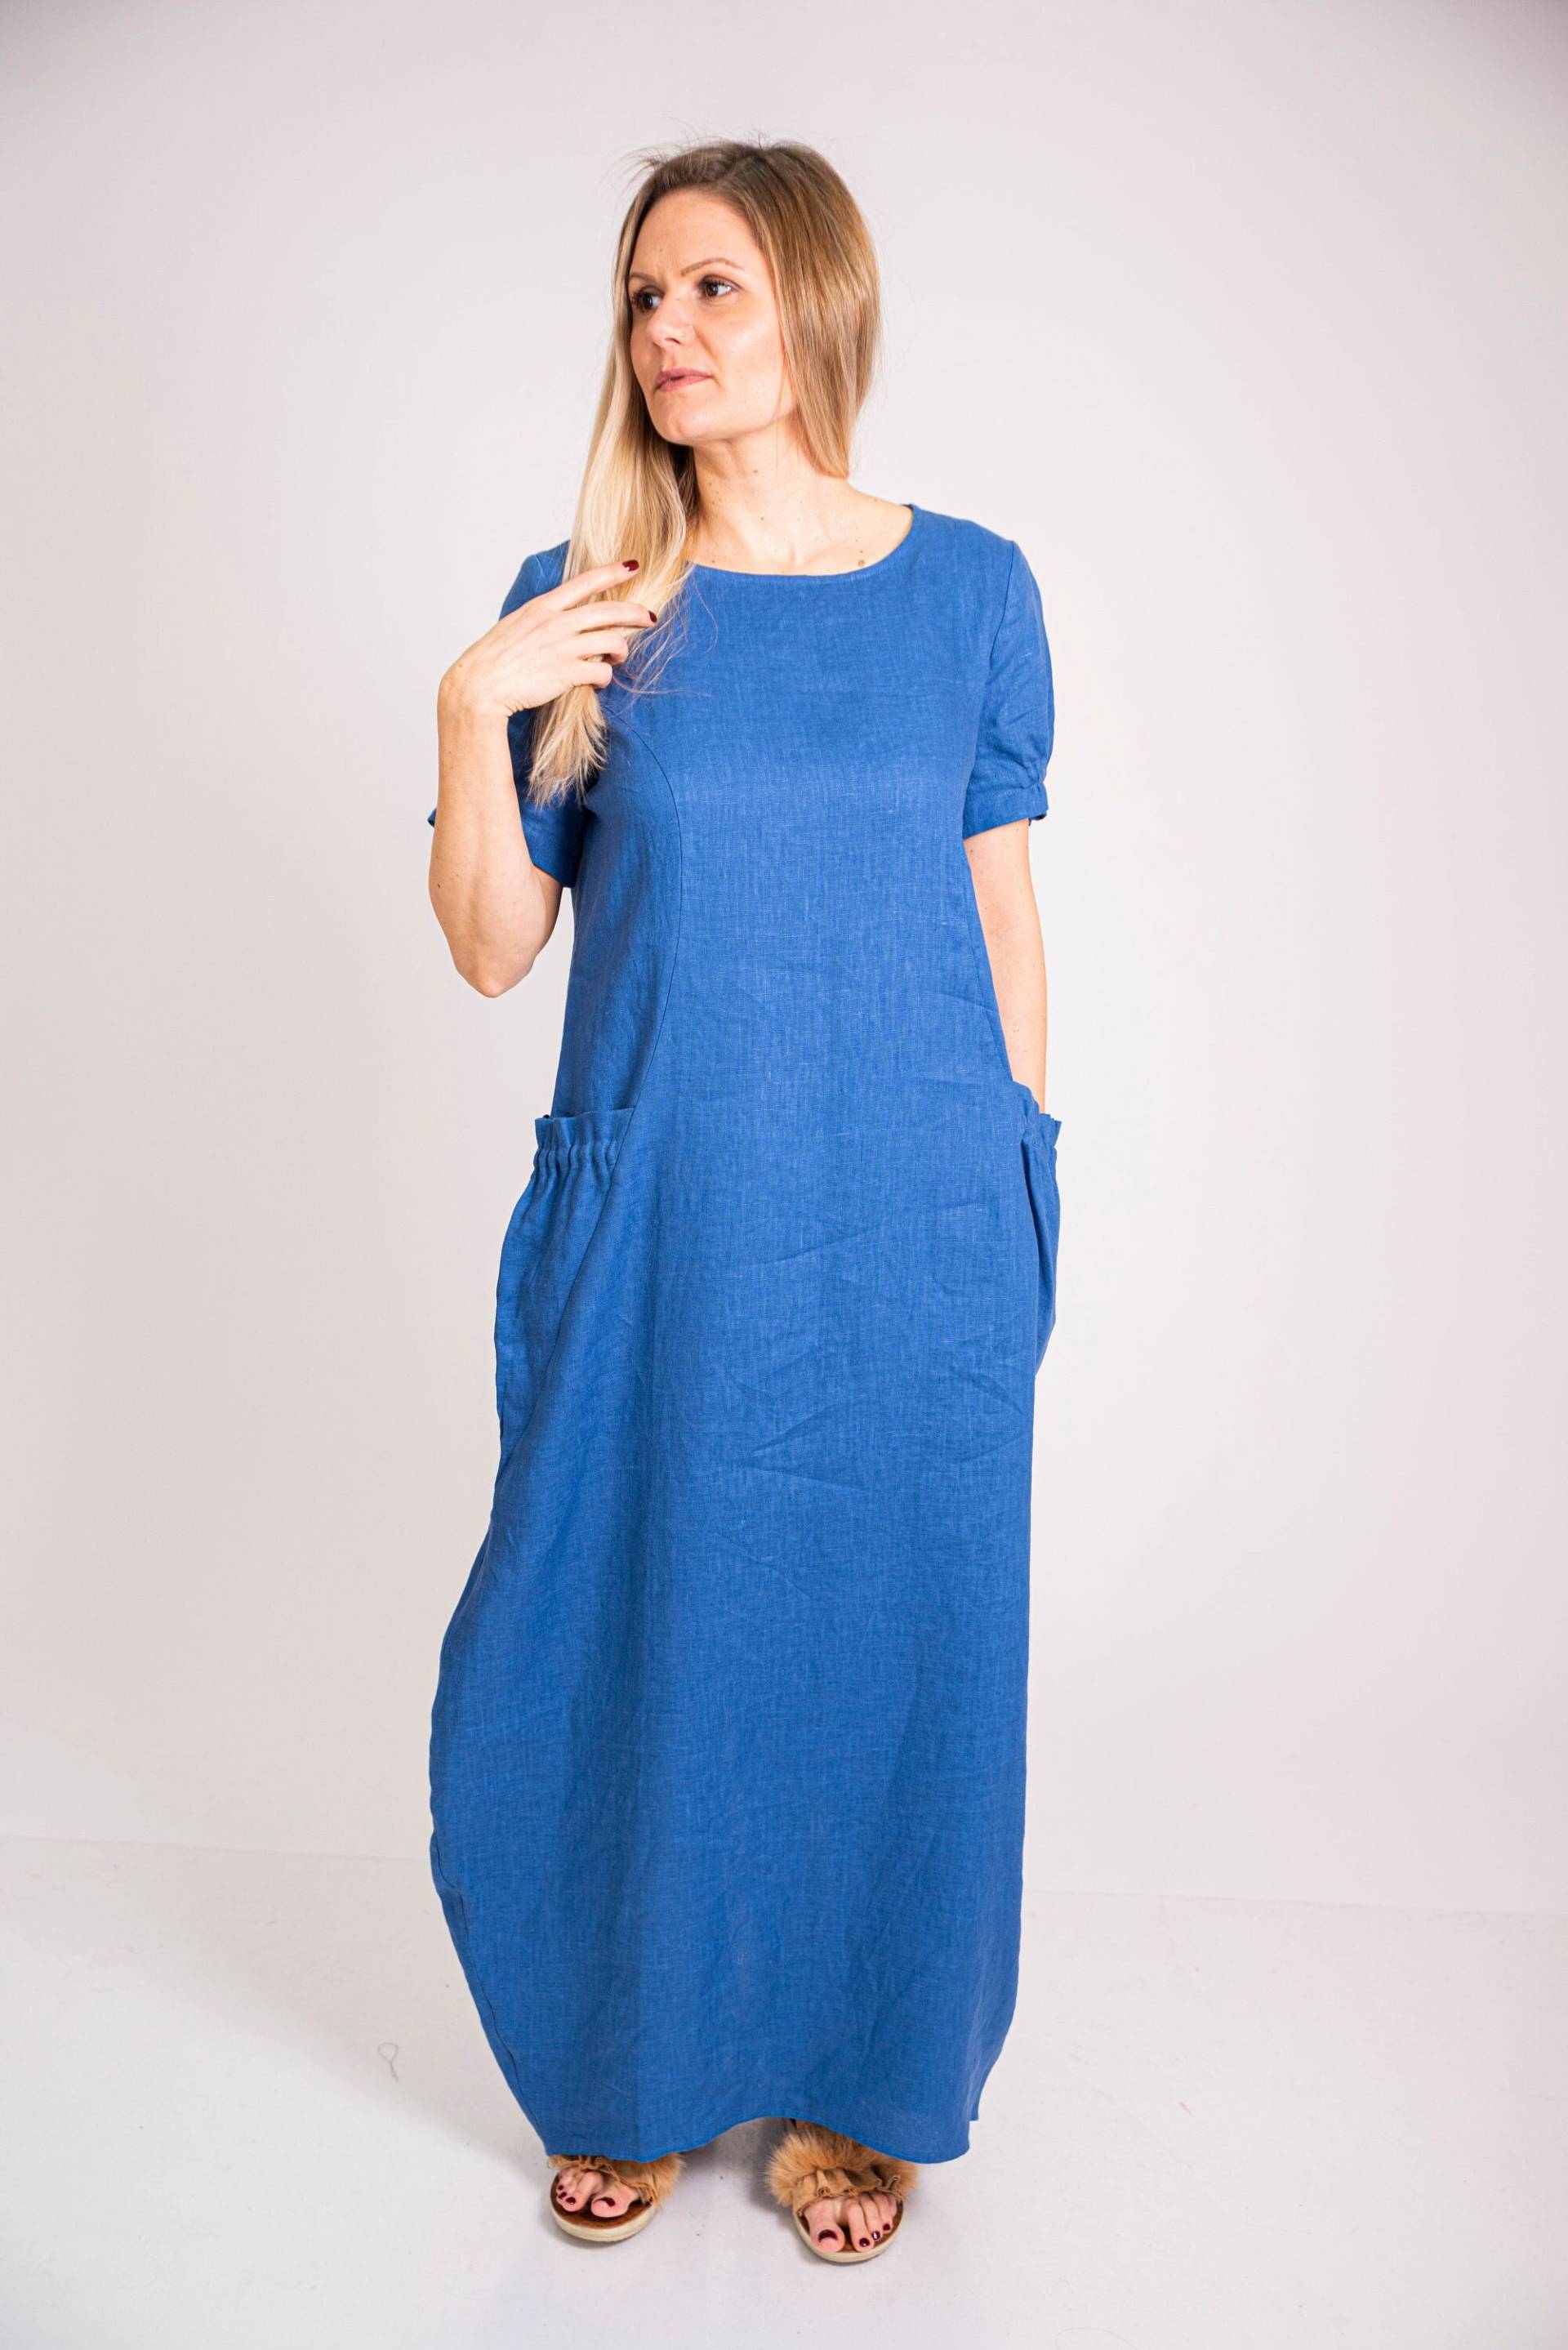 Blaues Leinenkleid Damen Entspanntes Mit Taschen Kurzärmeliges Kleid Leinen Sommer Abaya Cocoon von LinenDressesForWomen